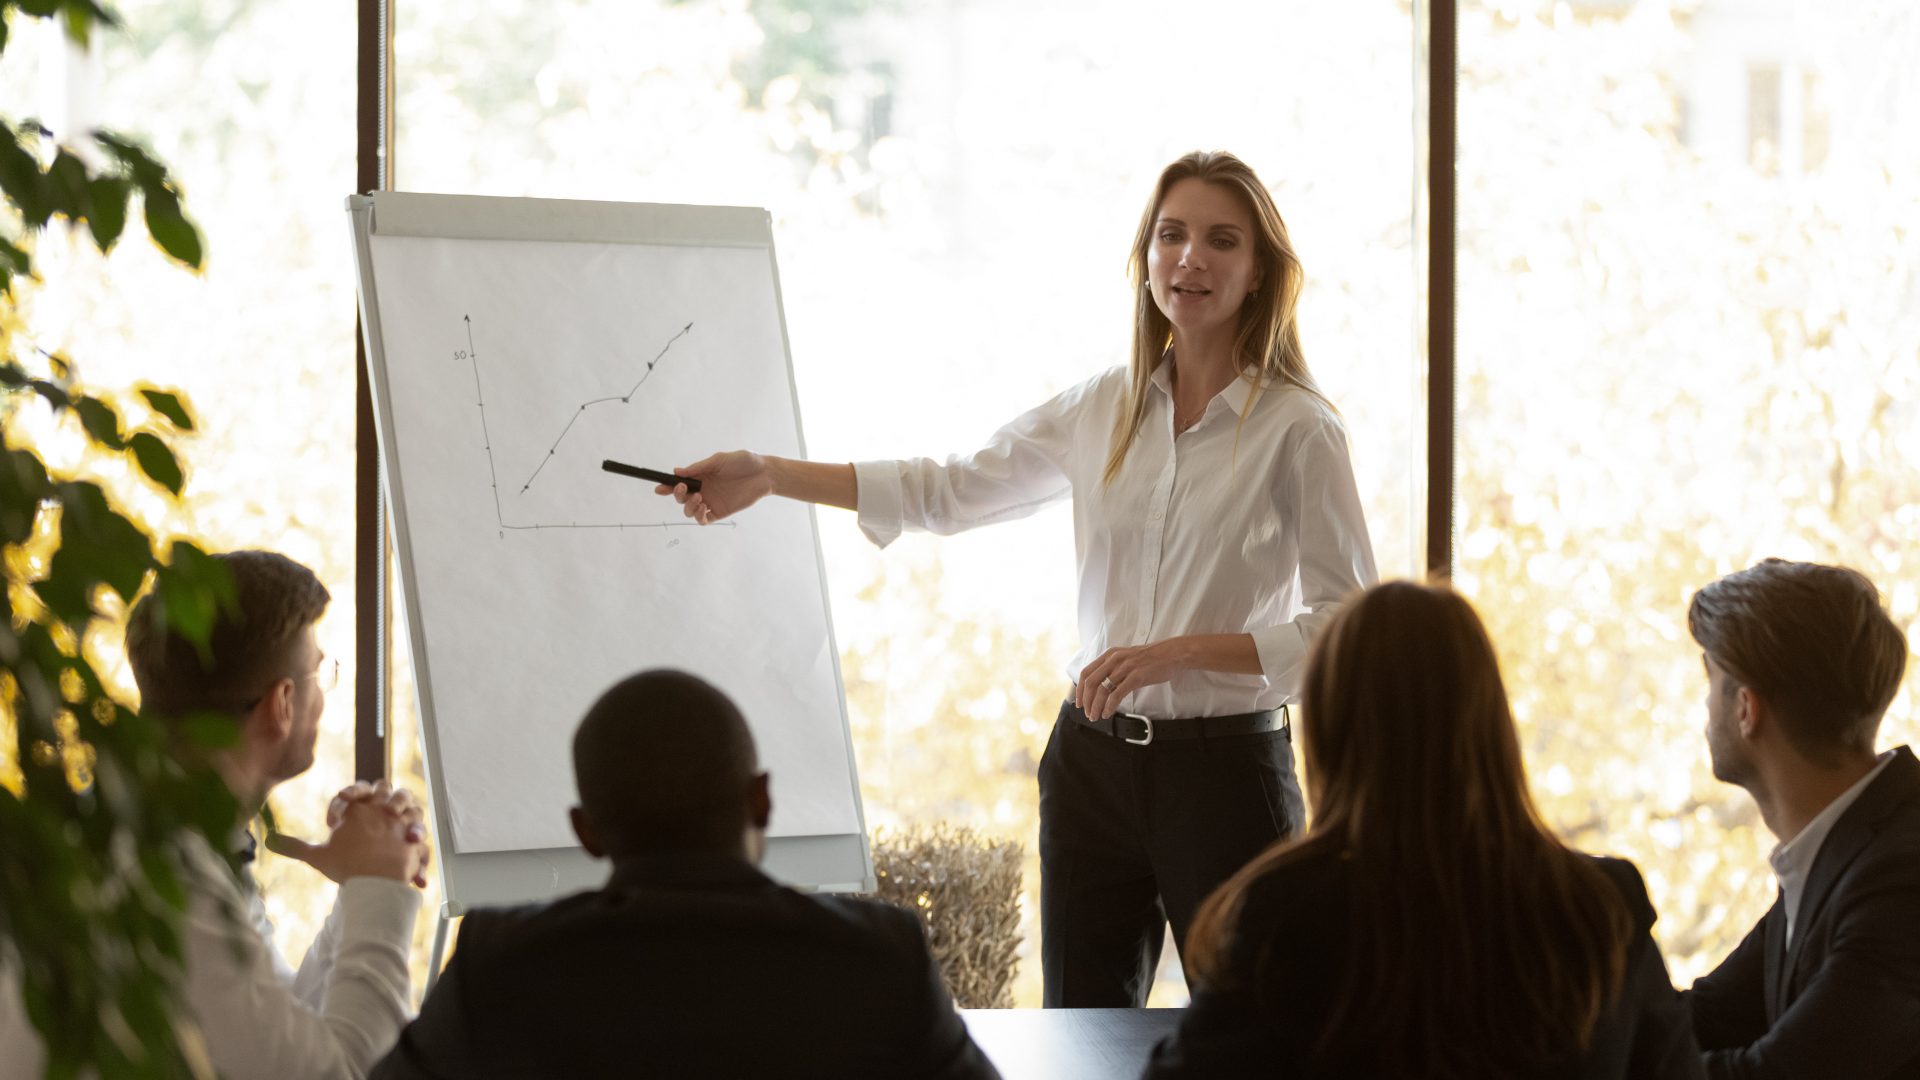 Femme donne une présentation sur un tableau de conférence lors d'une réunion de formation